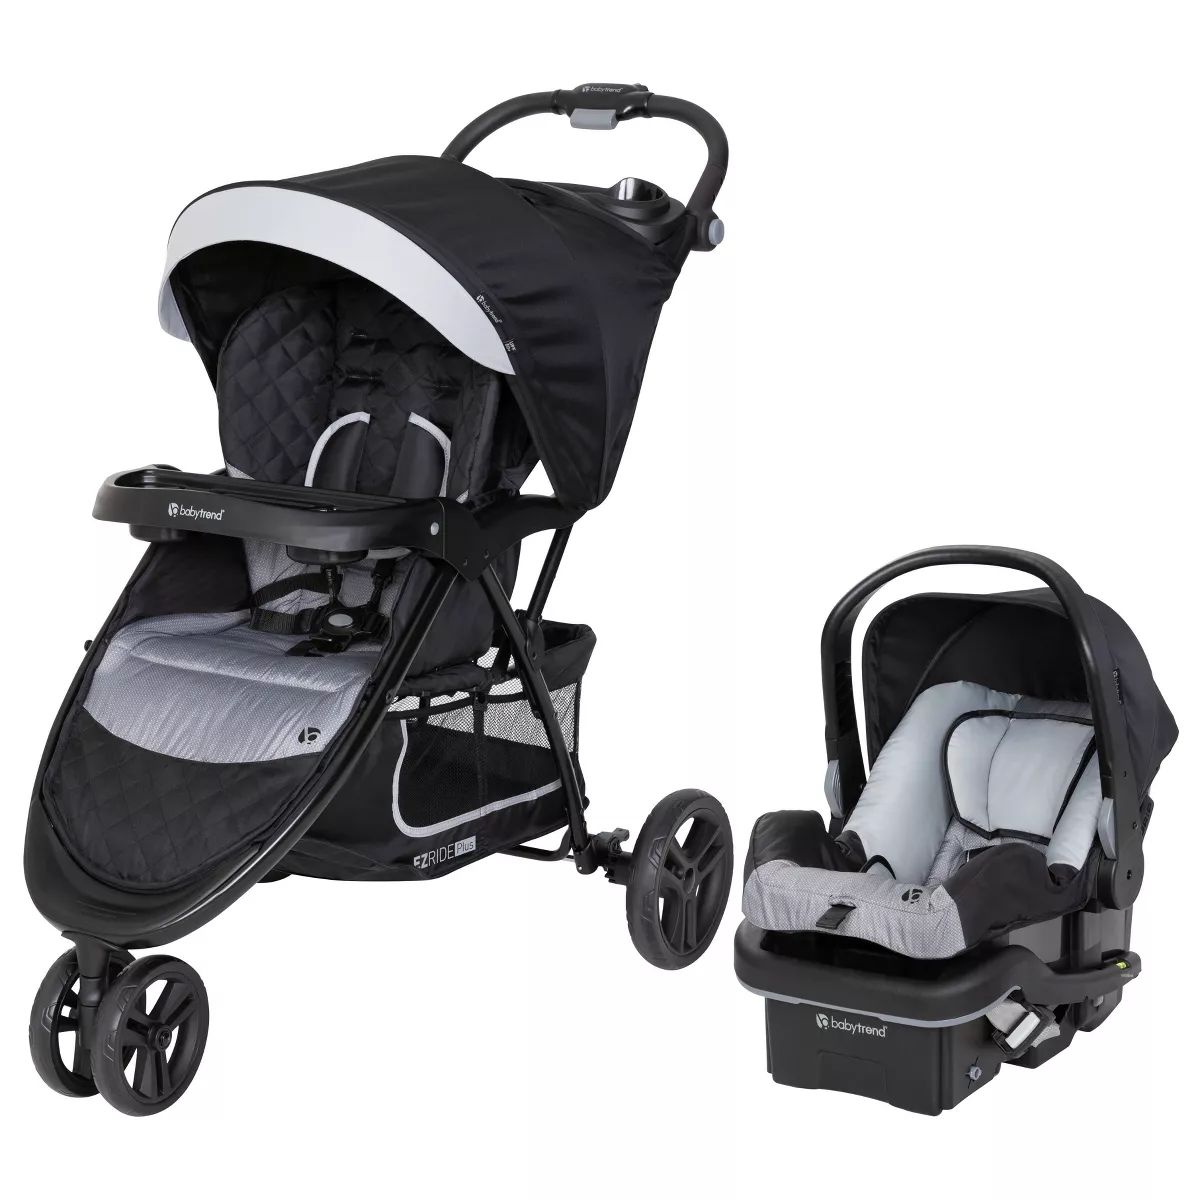 Baby Trend EZ Ride PLUS Travel System with EZ-Lift 35 Infant Car Seat - Carbon Black | Target